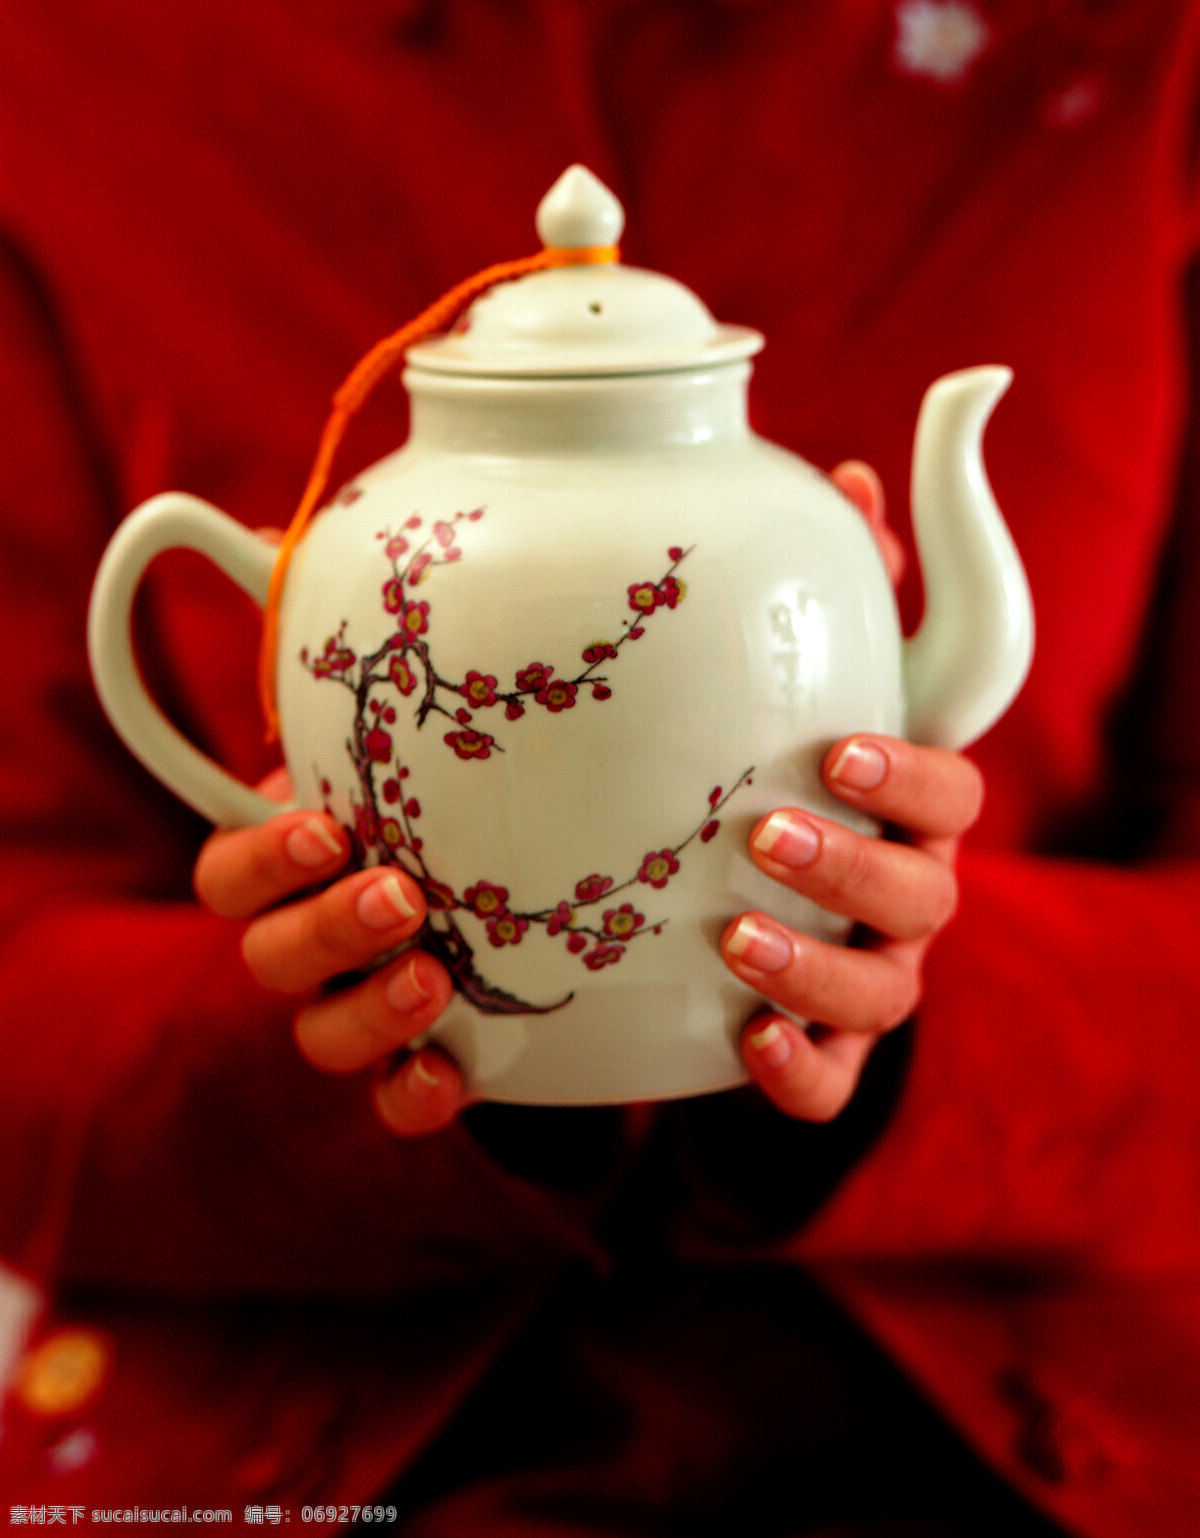 品尝免费下载 茶杯 茶壶 茶具 茶水 茶叶 古色古香 广告 大 辞典 品茶 品尝 饮料 饮品 文化艺术